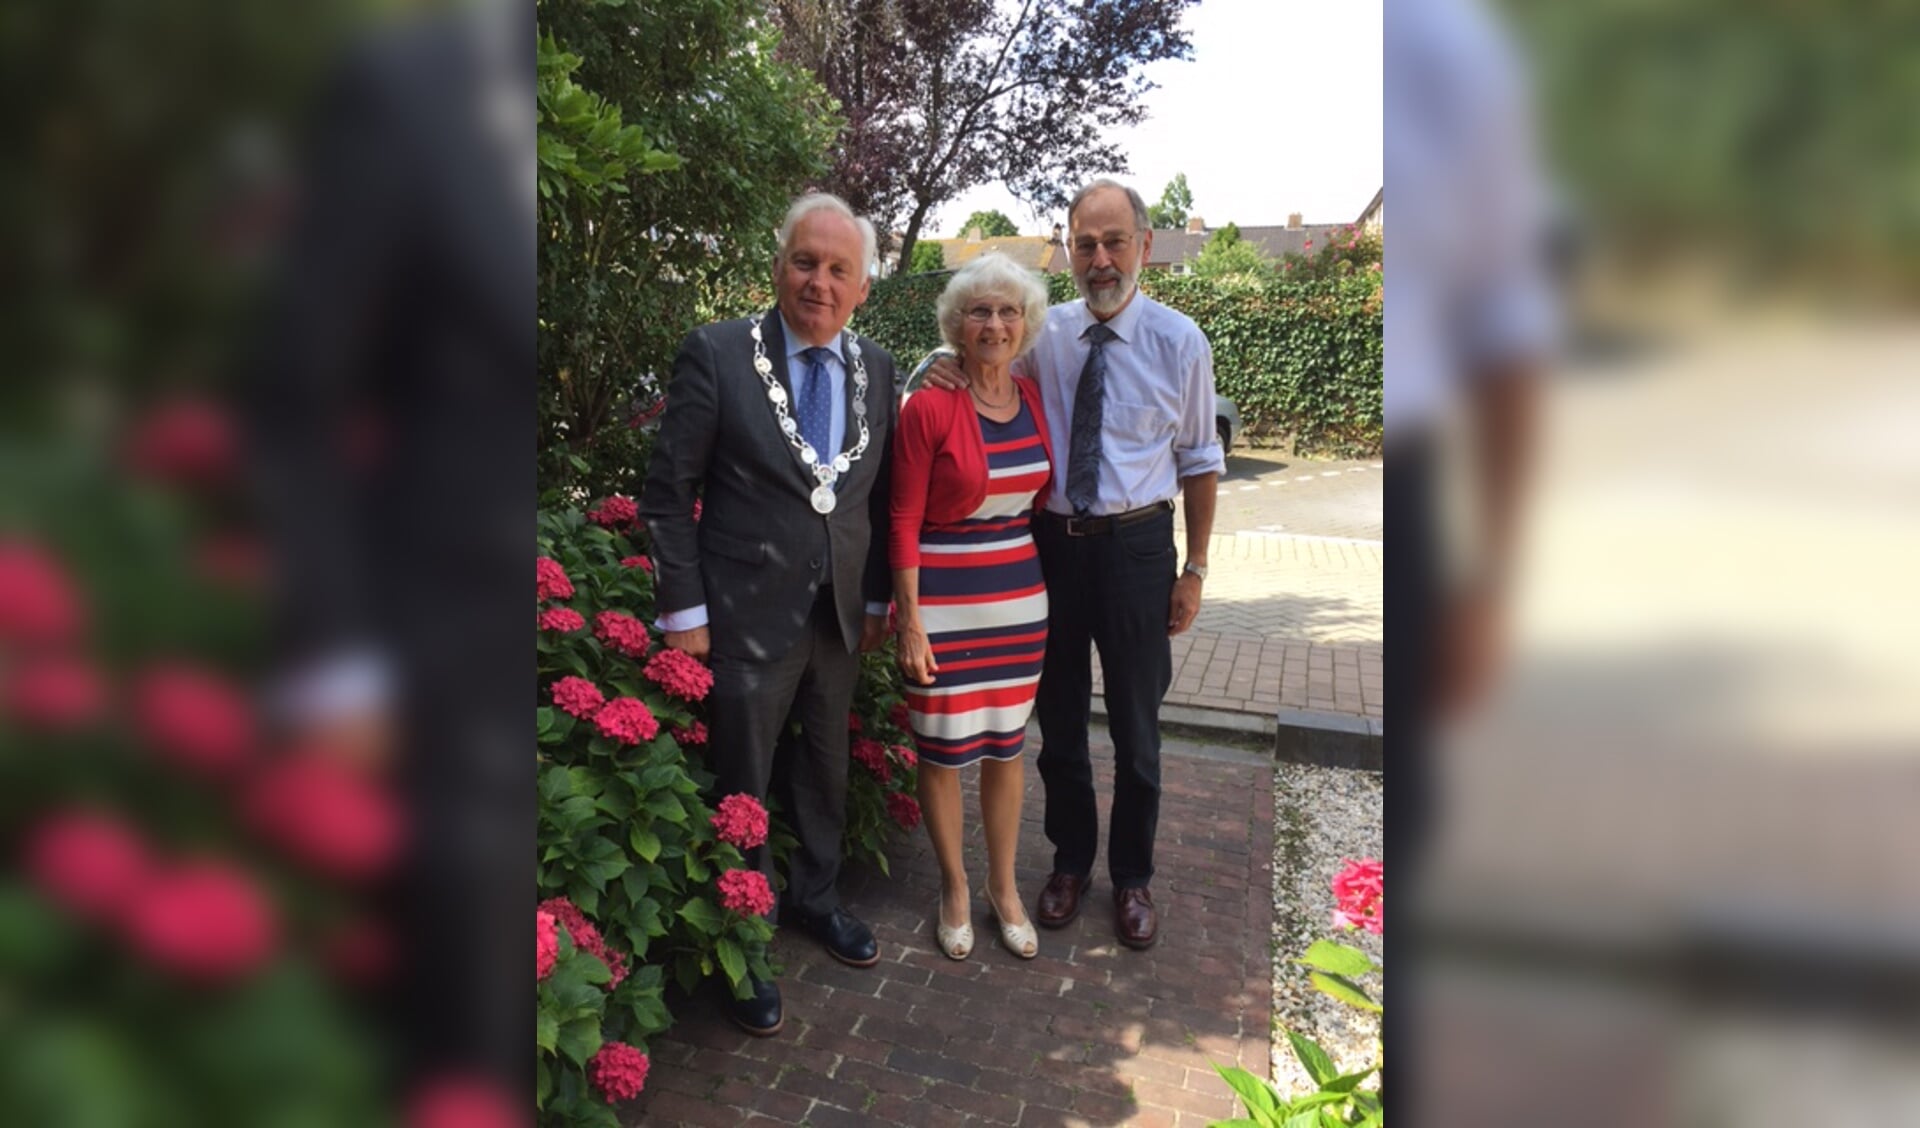 Burgemeester van der Borg feliciteert echtpaar Blonk-Terlouw uit Brandwijk. Ze zijn vijftig jaar getrouwd.